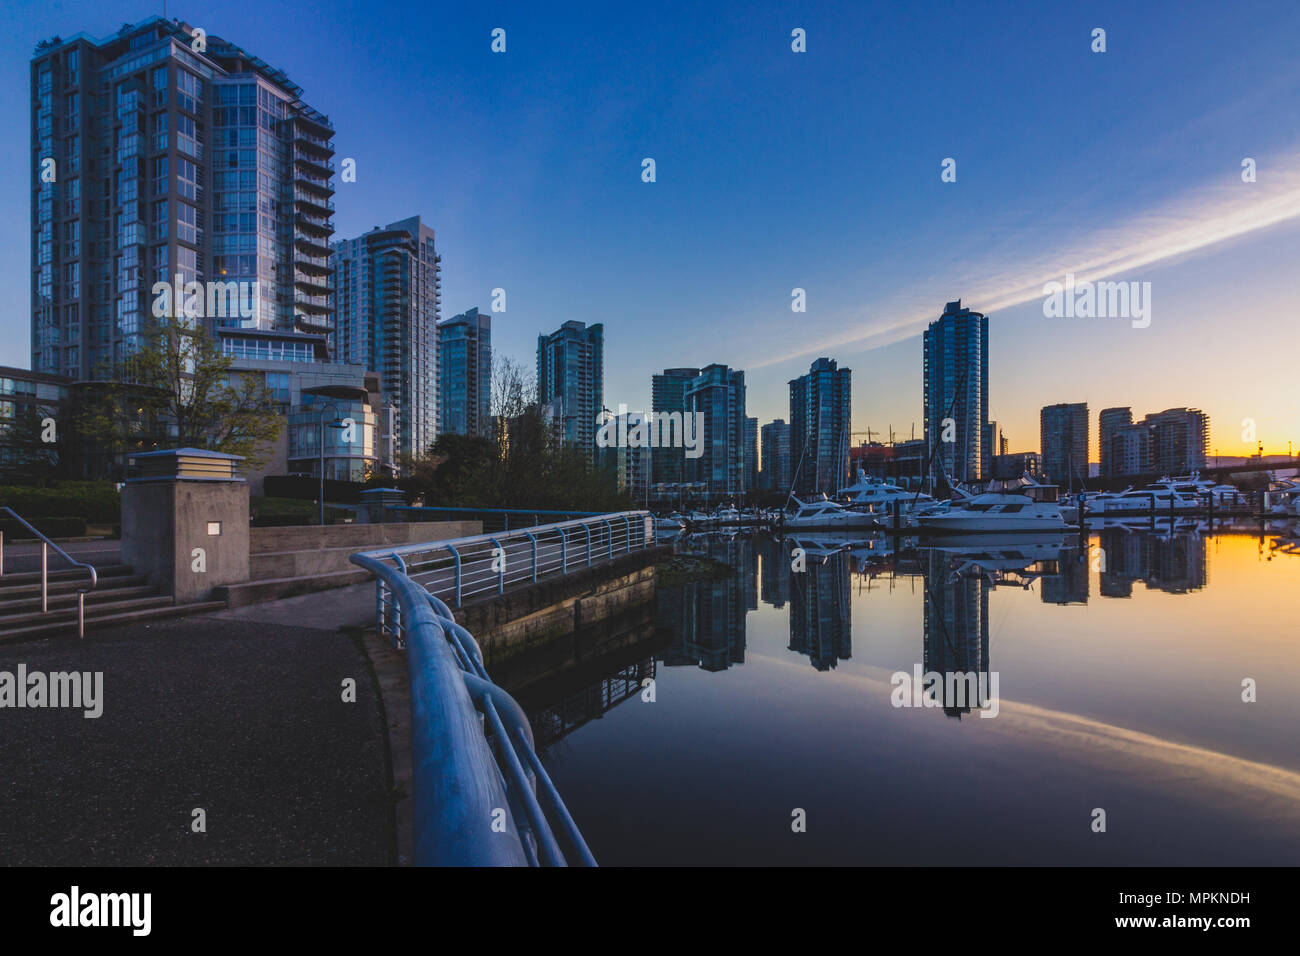 Paysage urbain de Marina Quai prises au lever du soleil avec des réflexions de bâtiments et de bateaux dans l'eau calme, Vancouver, Colombie-Britannique Banque D'Images